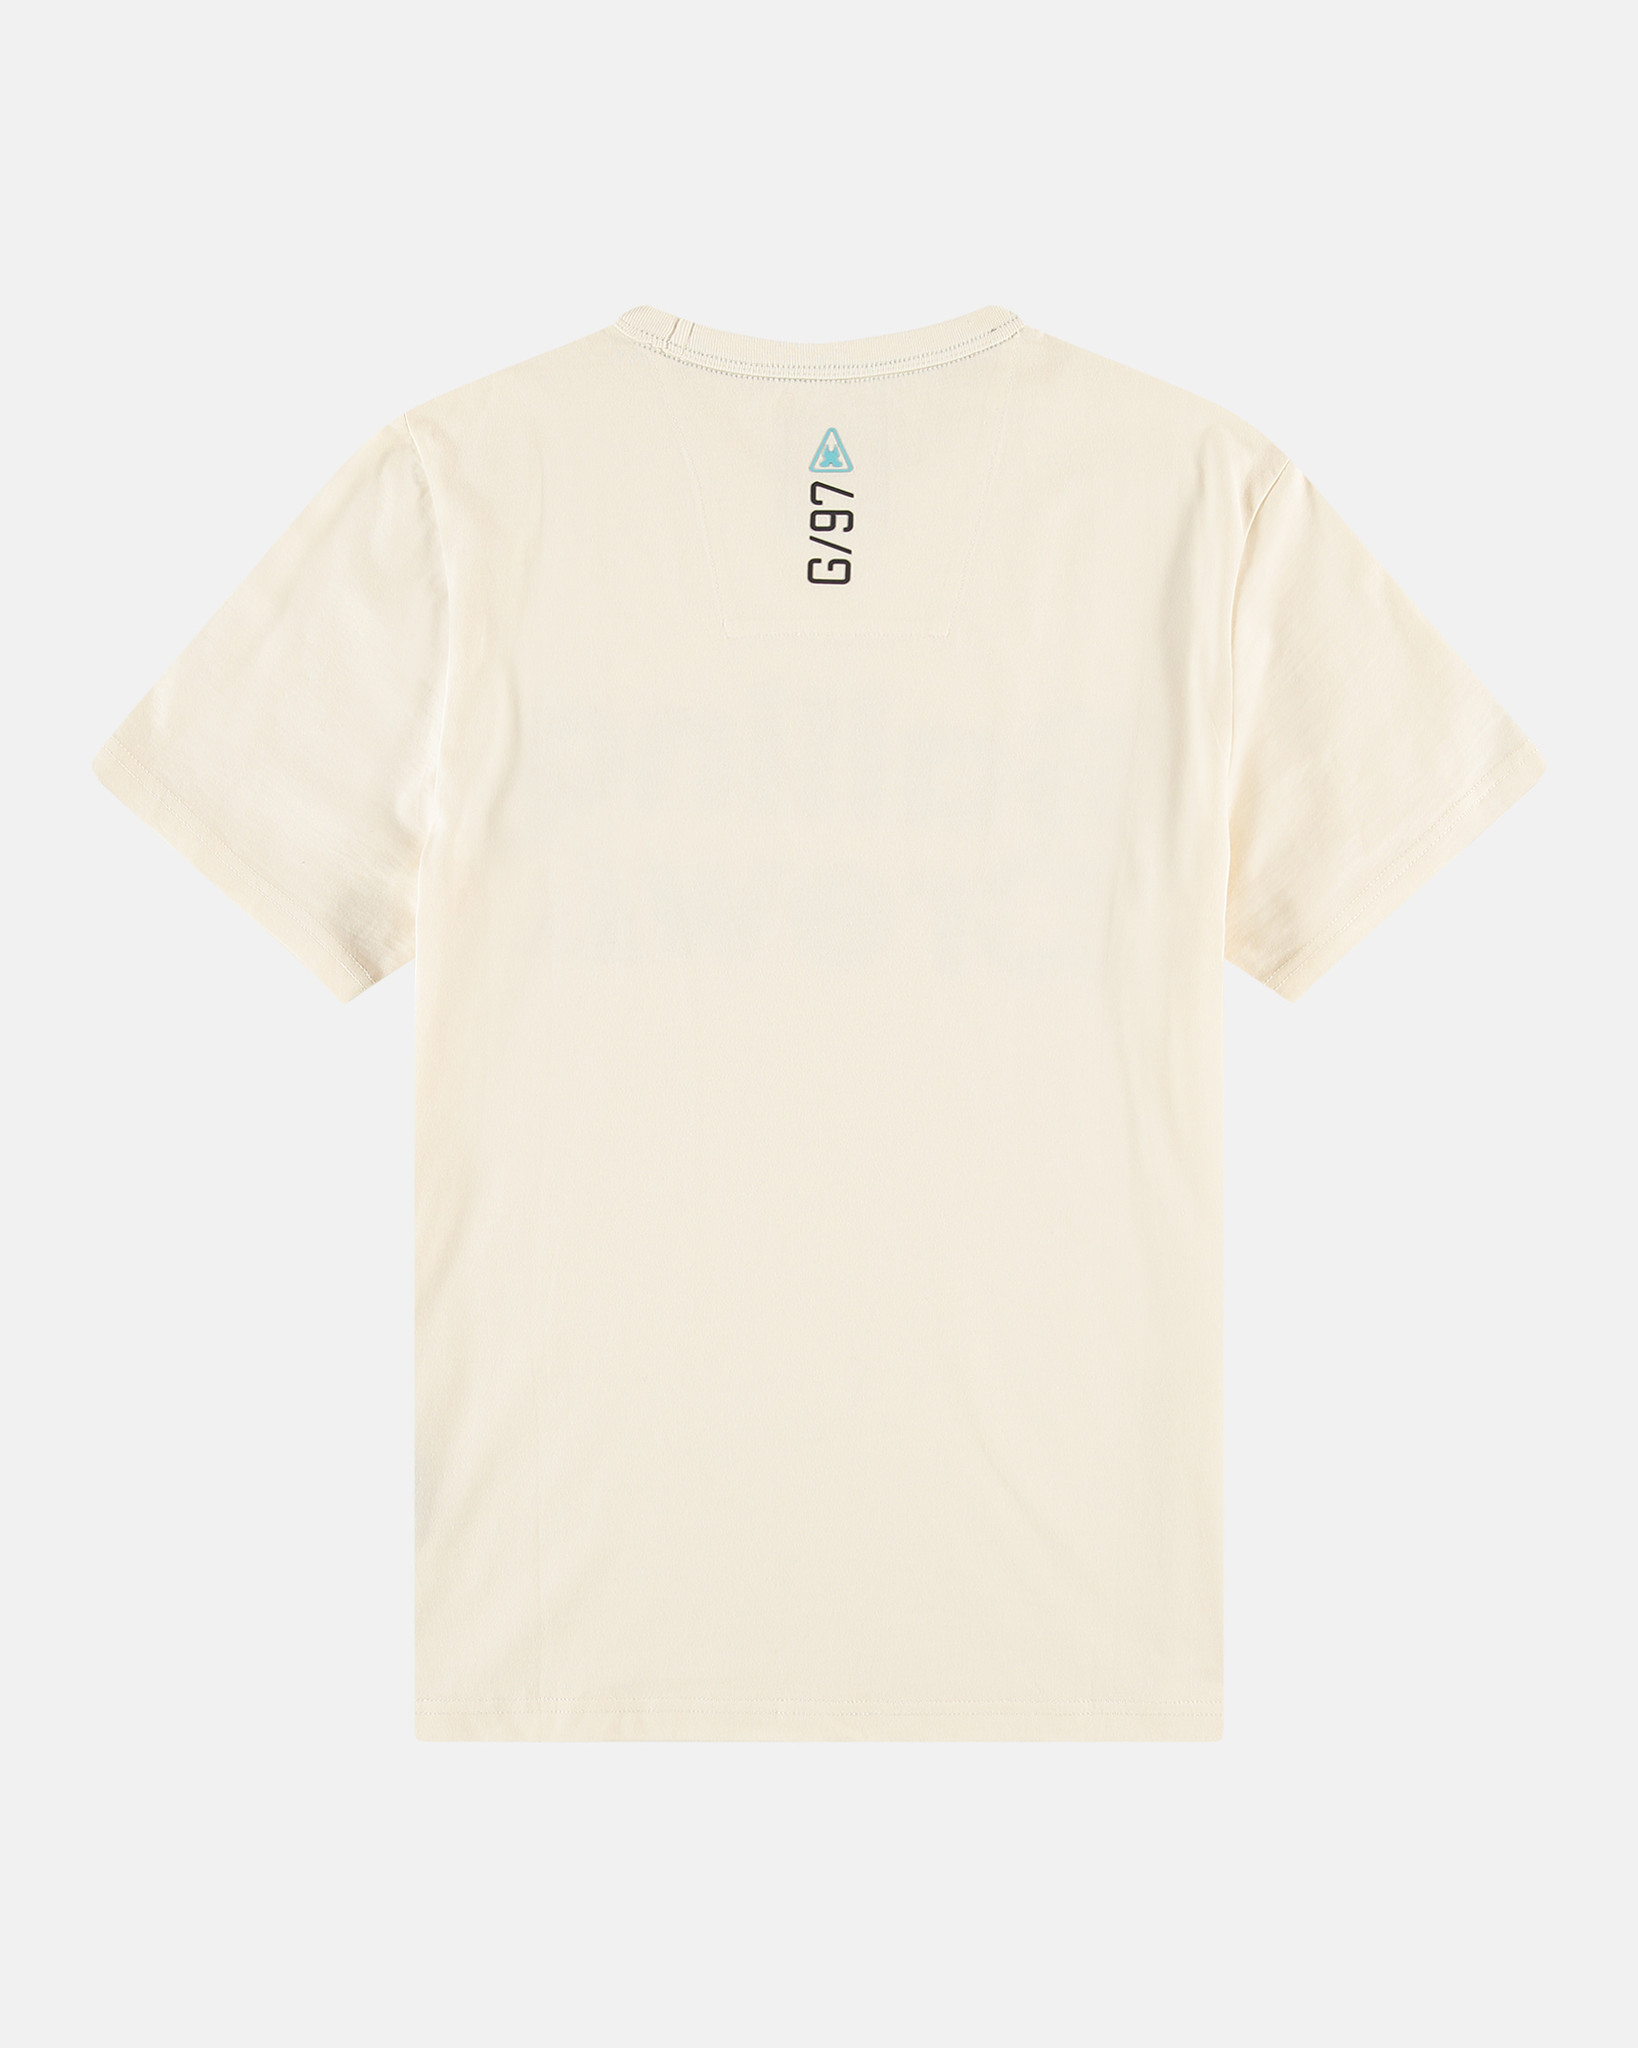 Das Sailing Crew Wiper T-shirt